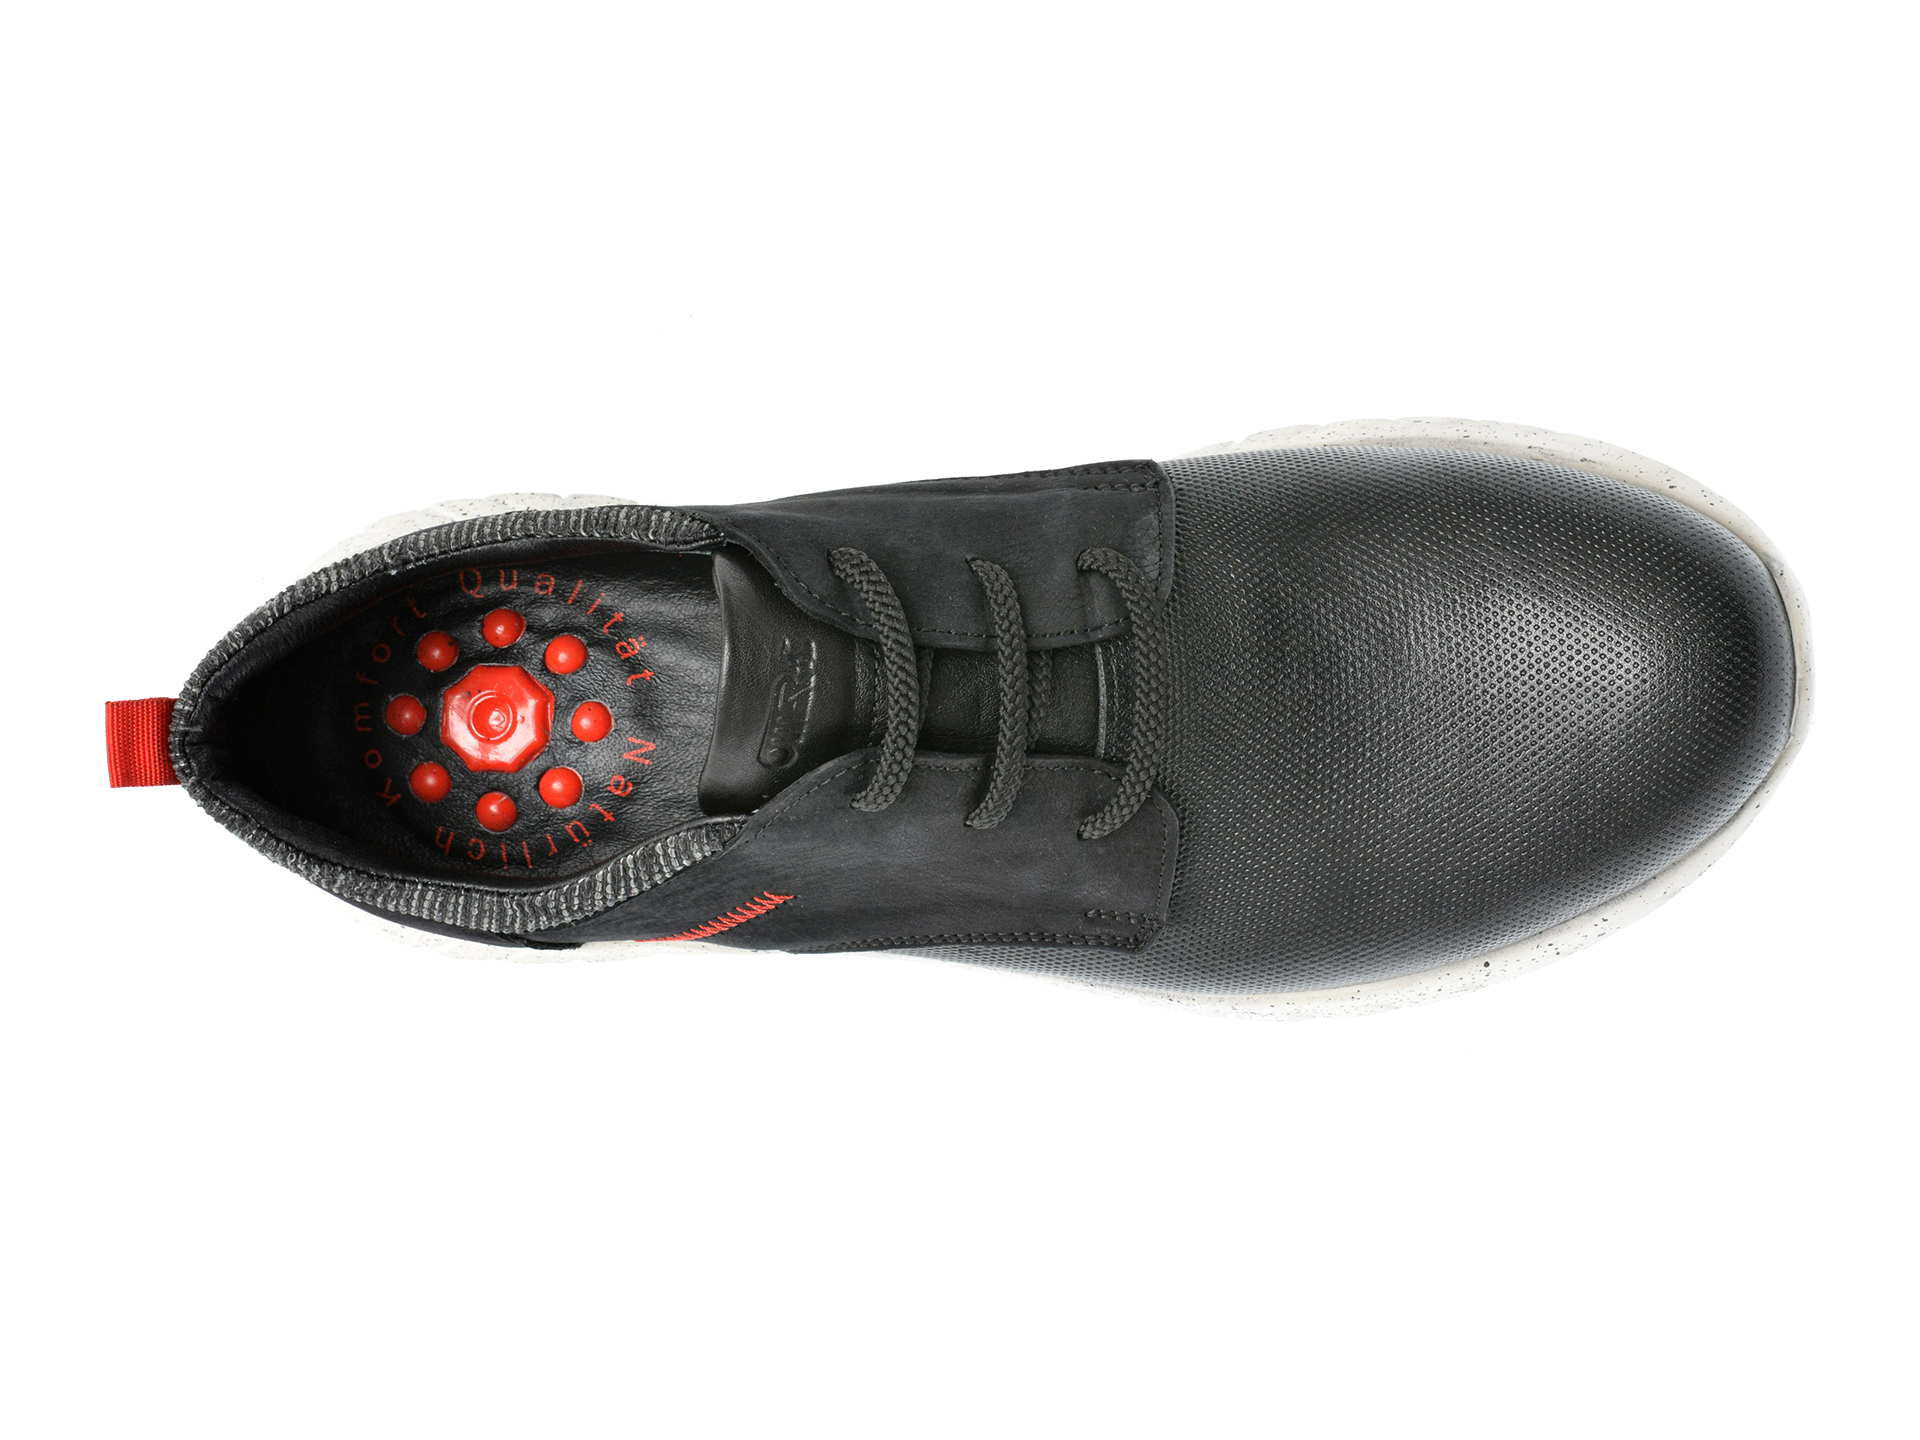 Poze Pantofi OTTER negri, EF413, din piele naturala Tezyo